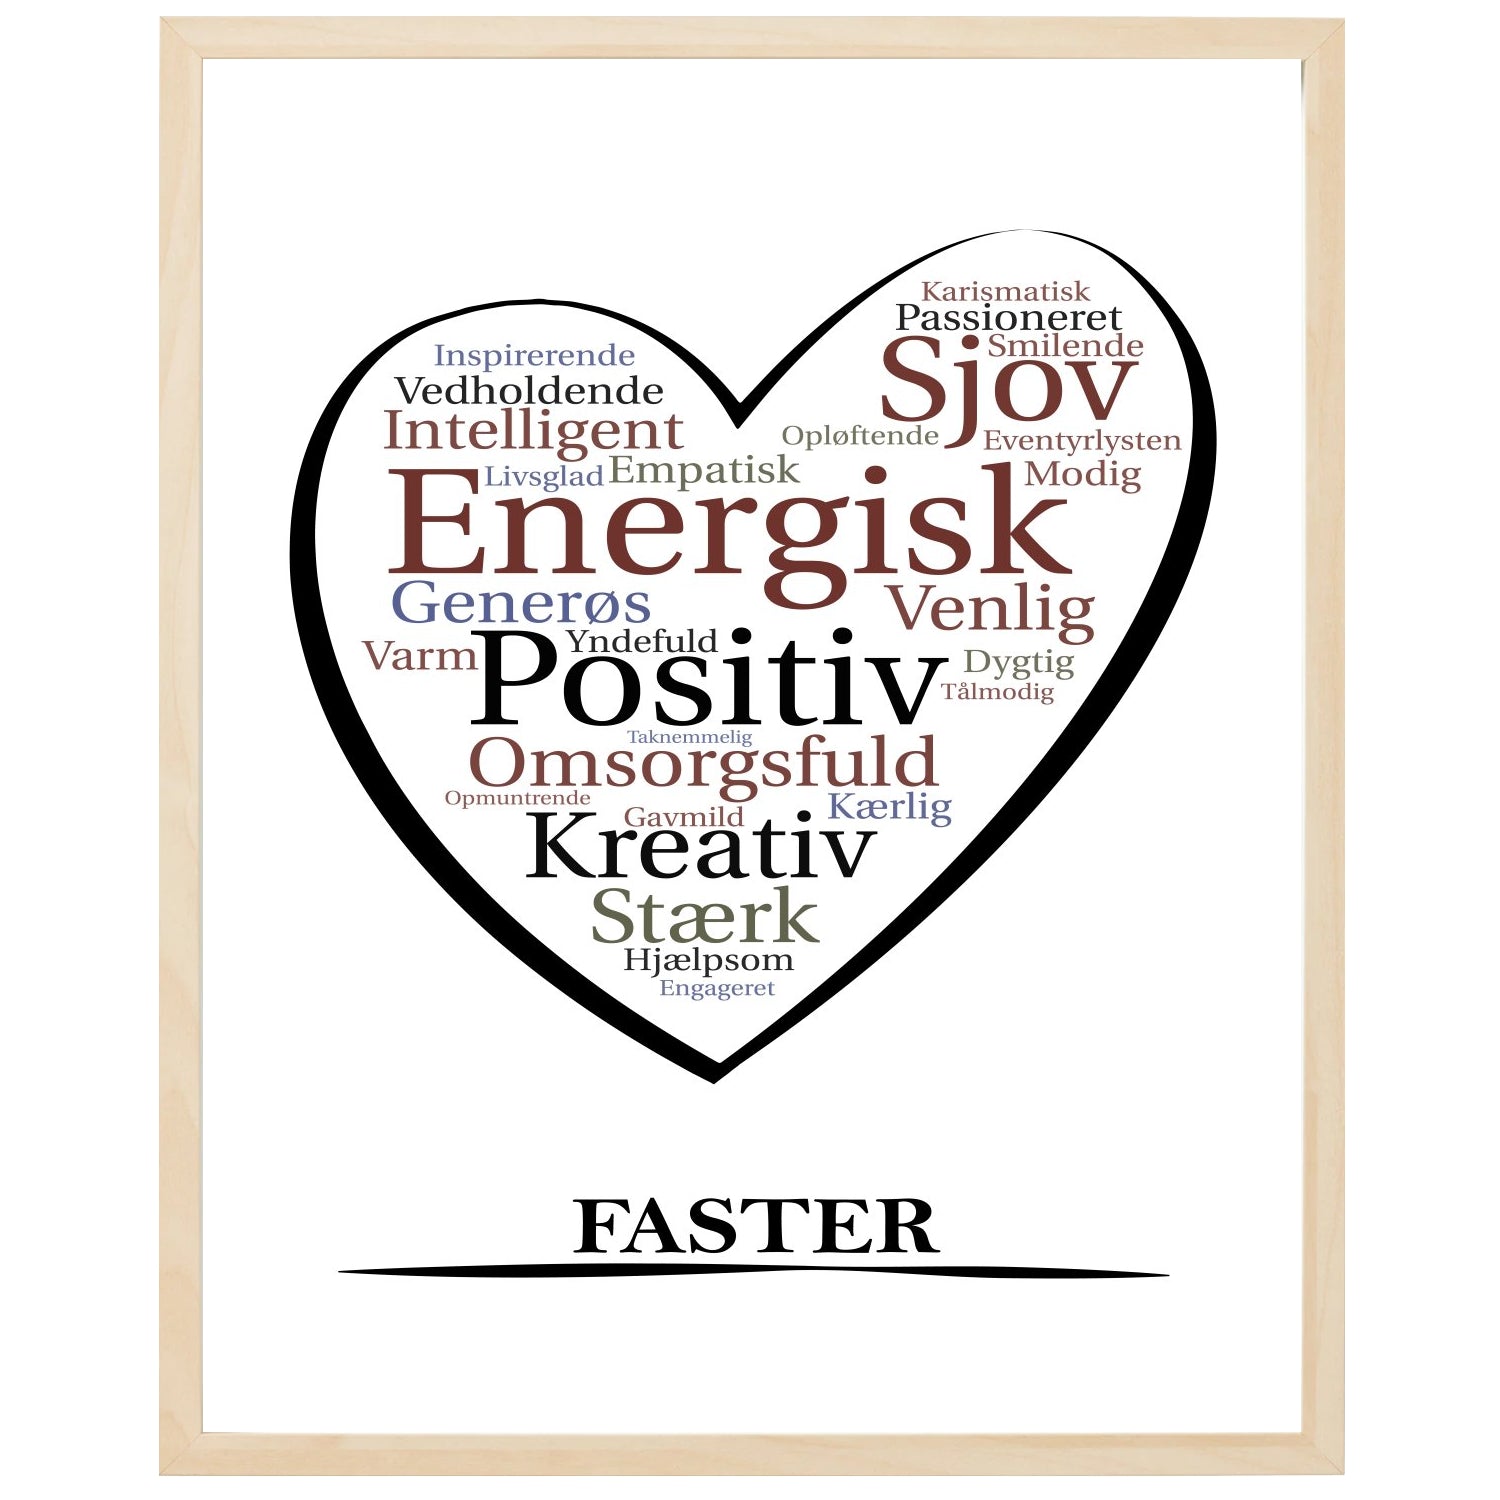 En plakat med overskriften Faster, et hjerte og indeni hjertet mange positive ord som beskriver en Faster